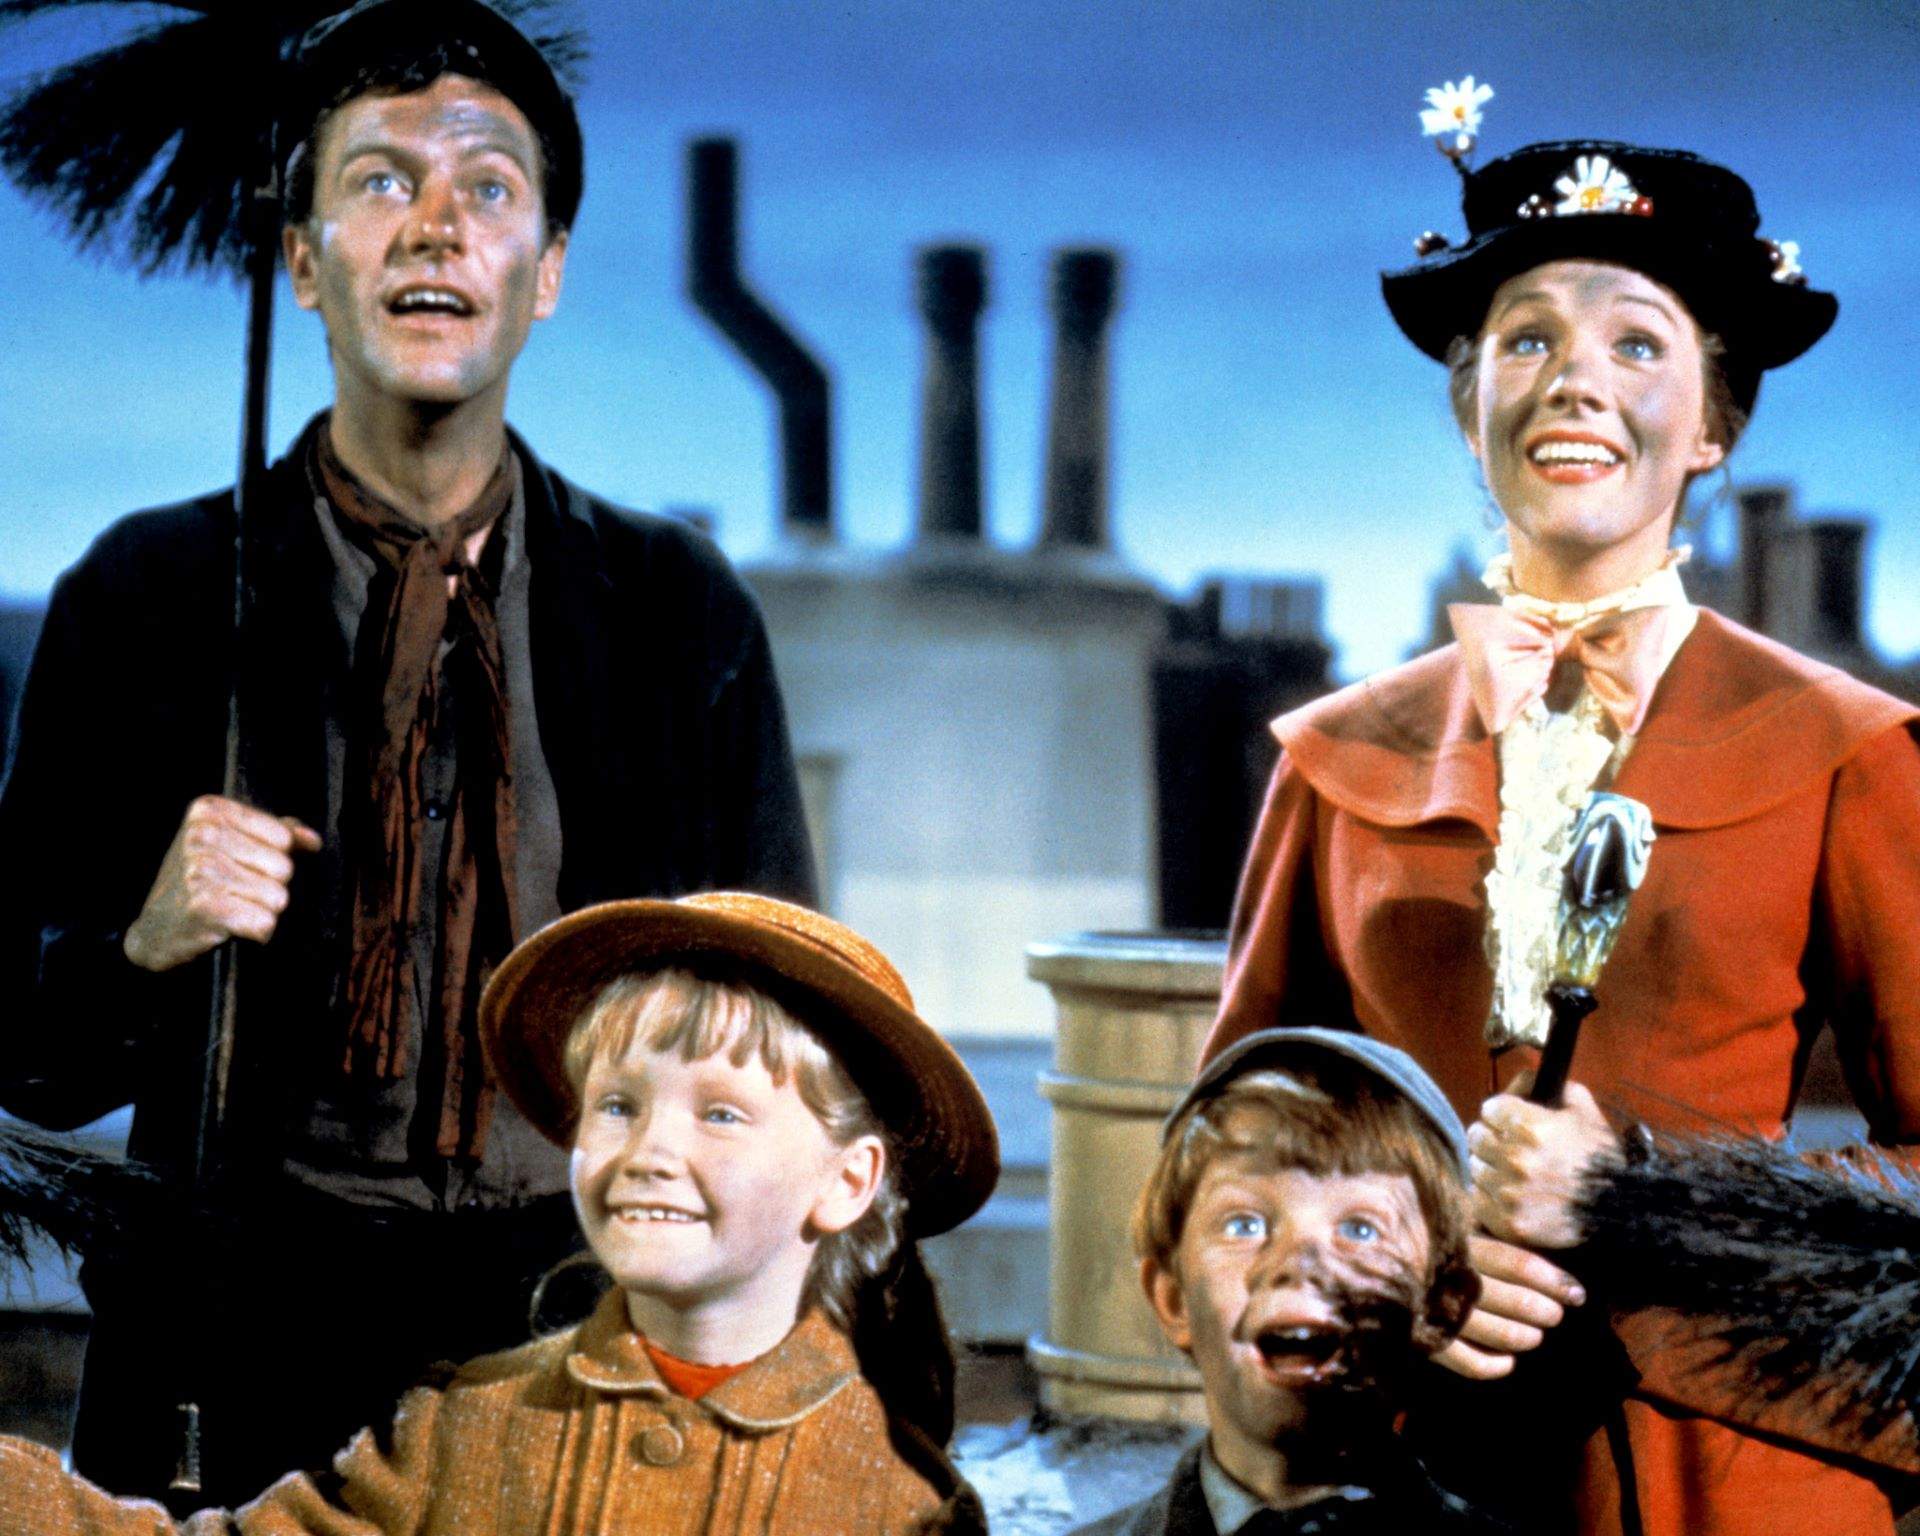 'Mary Poppins' ja no és apta per a tots els públics al Regne Unit per l'ús de llenguatge discriminatori